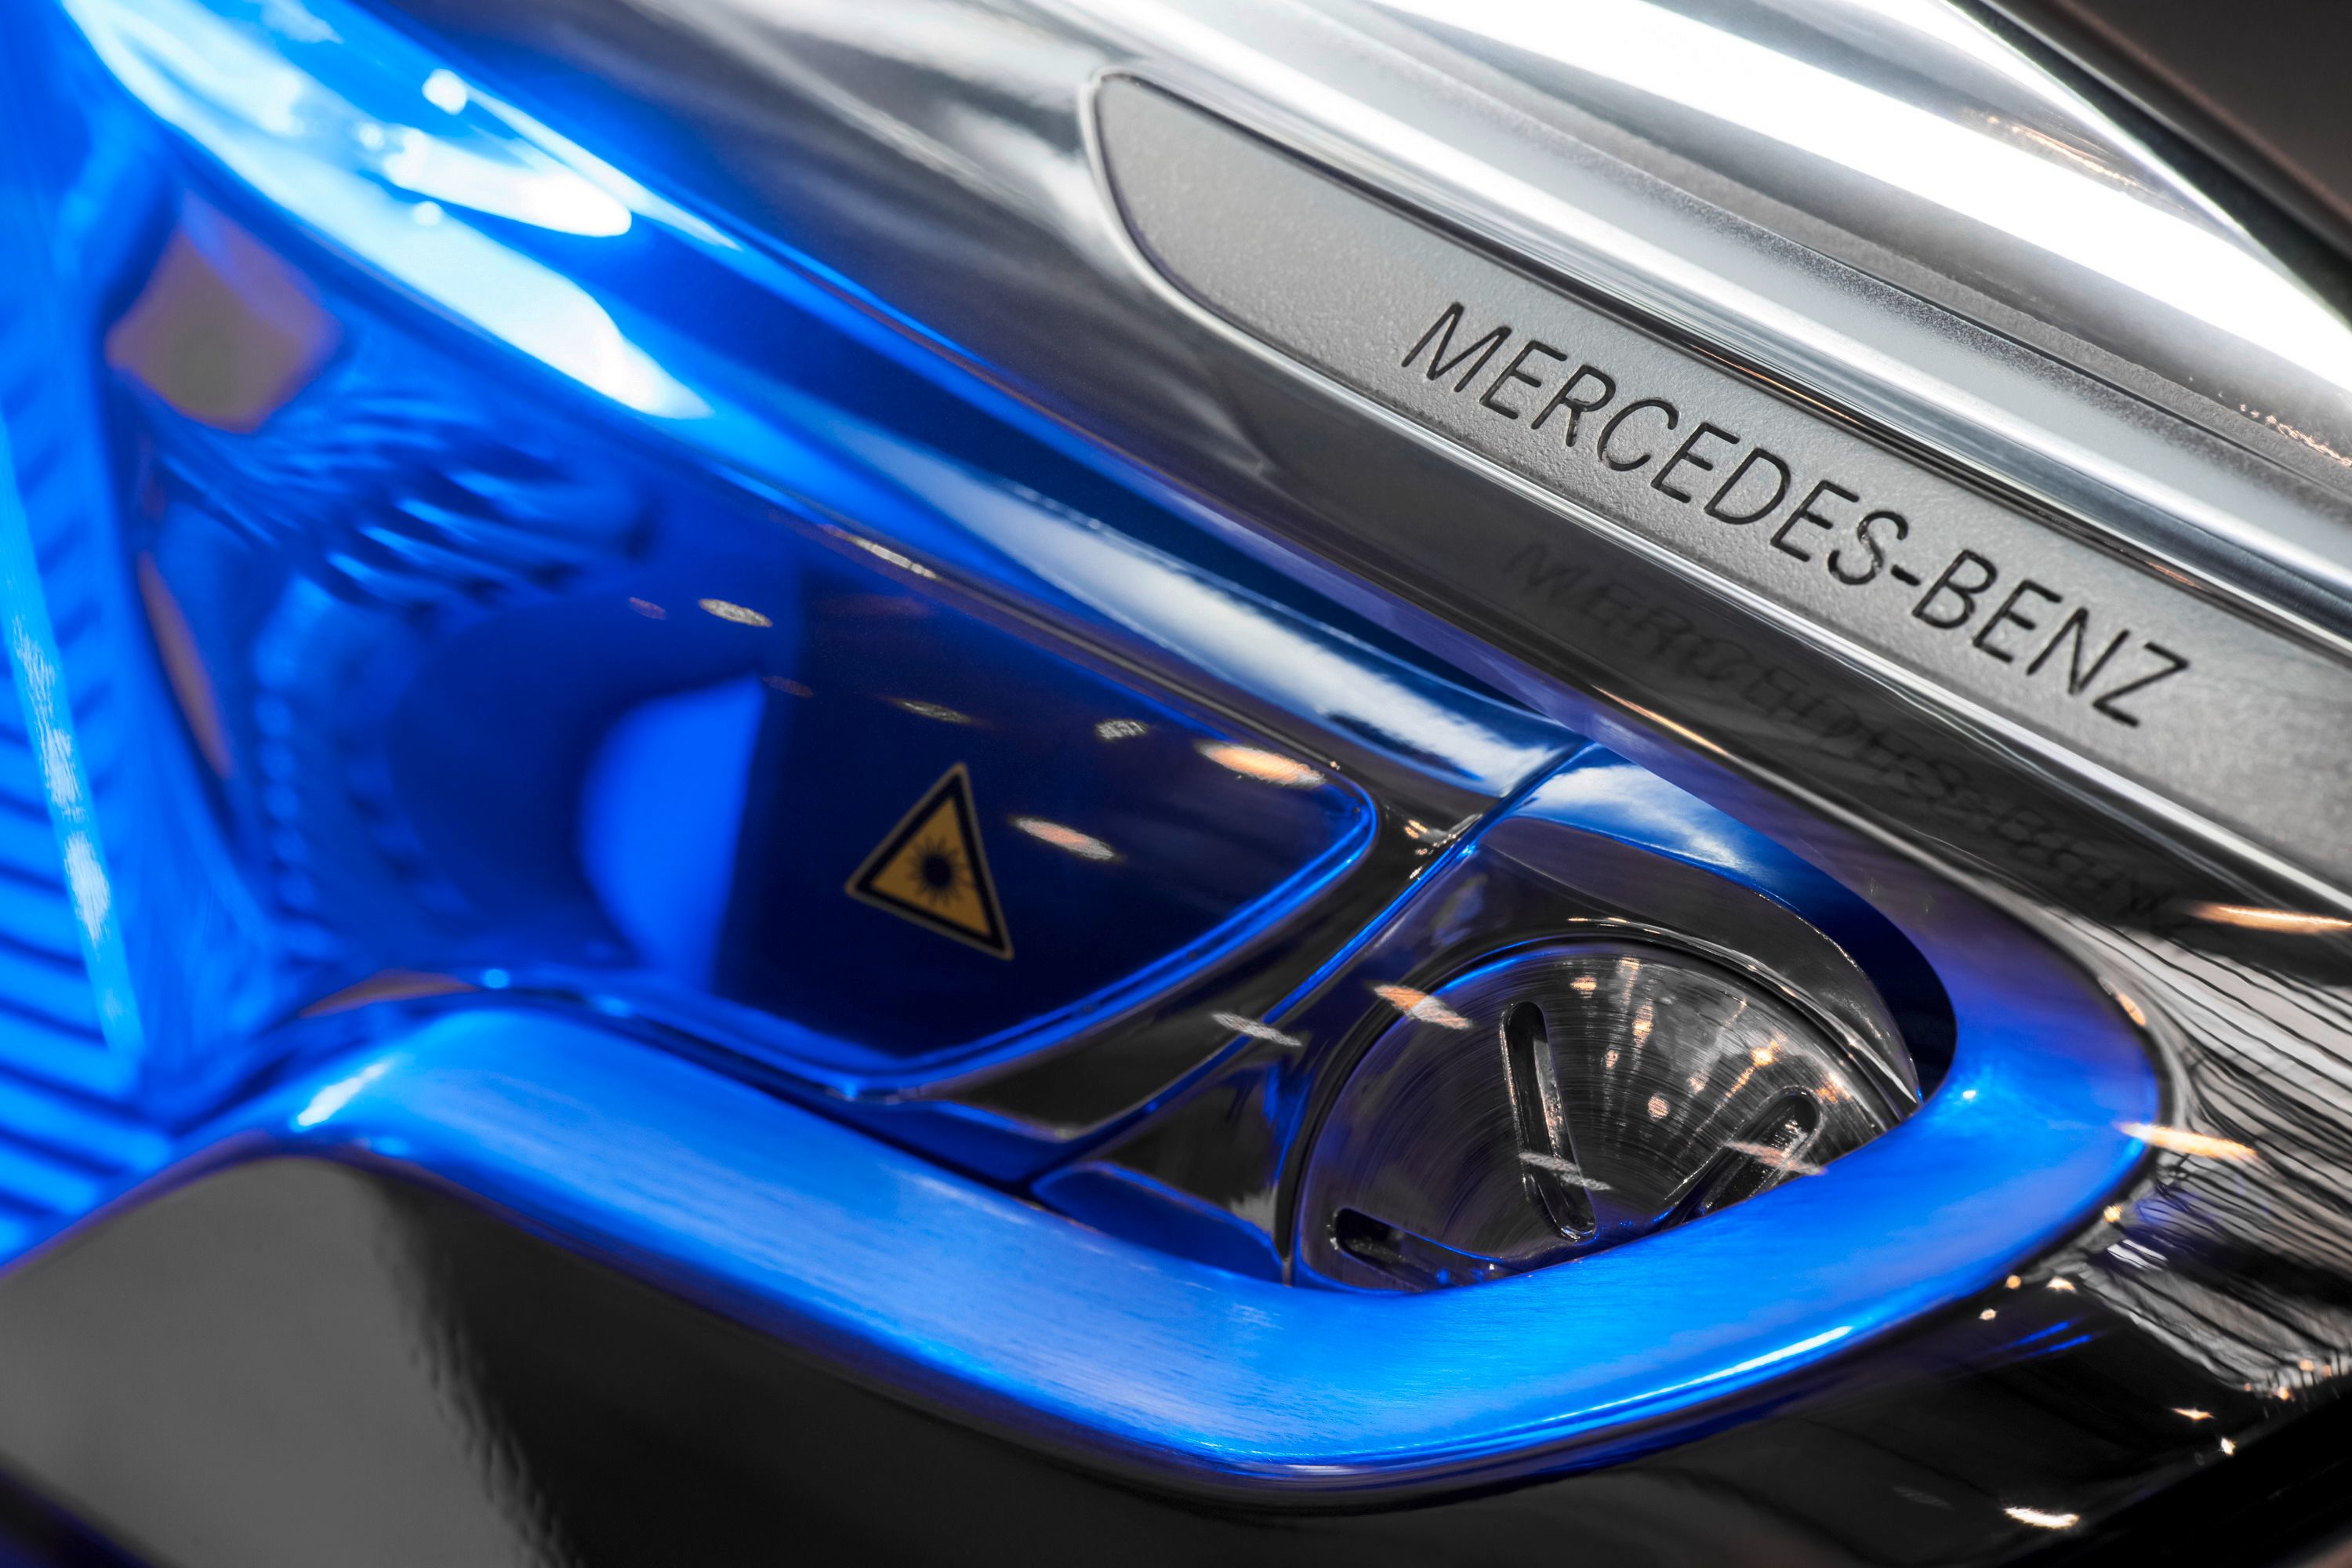 2015 Mercedes-Benz Concept GLA